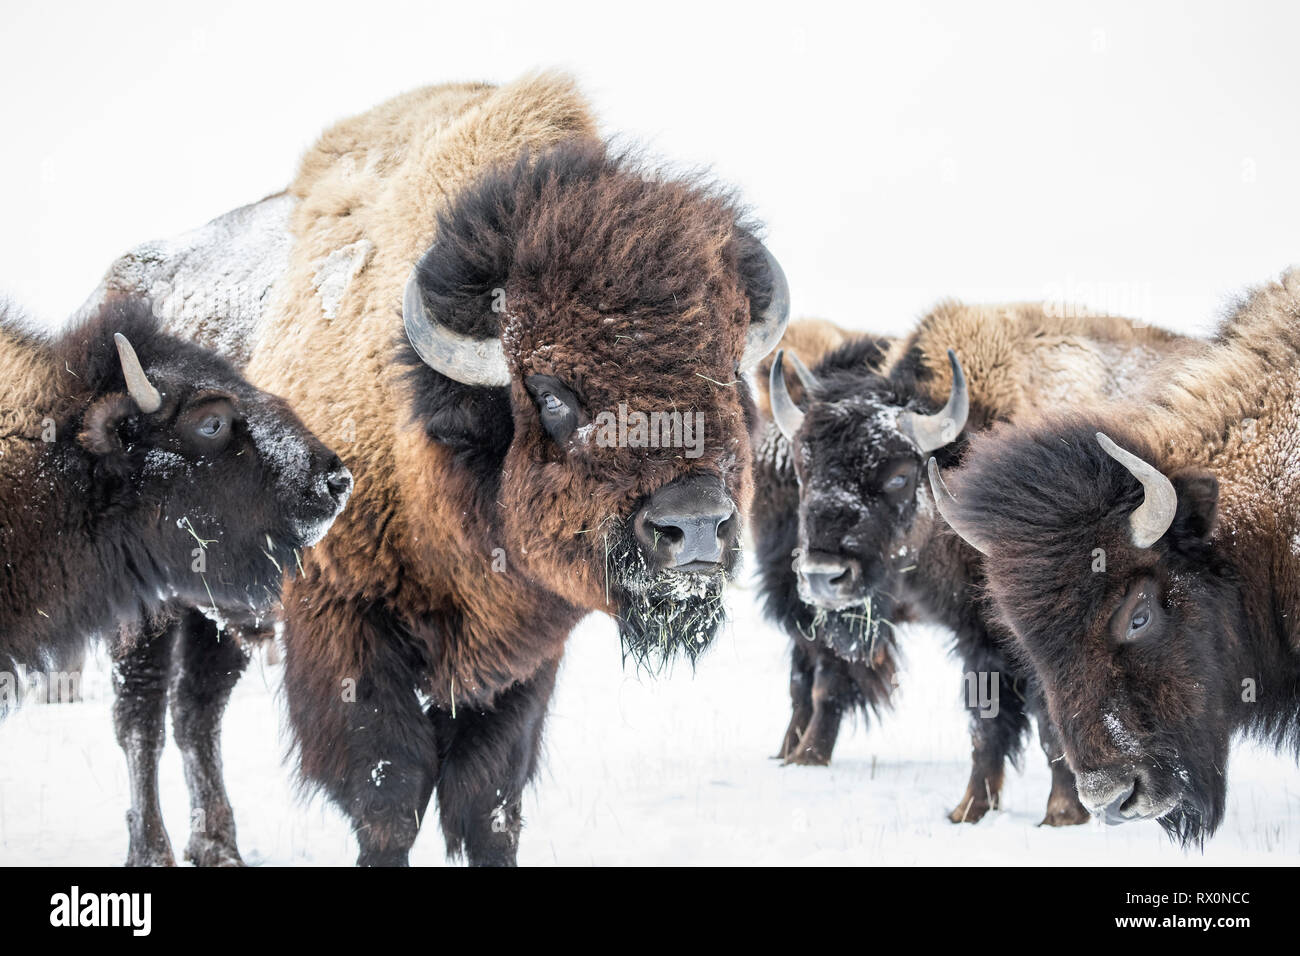 Llanuras Bison, Bison bison bison, en invierno, Manitoba, Canadá. Foto de stock